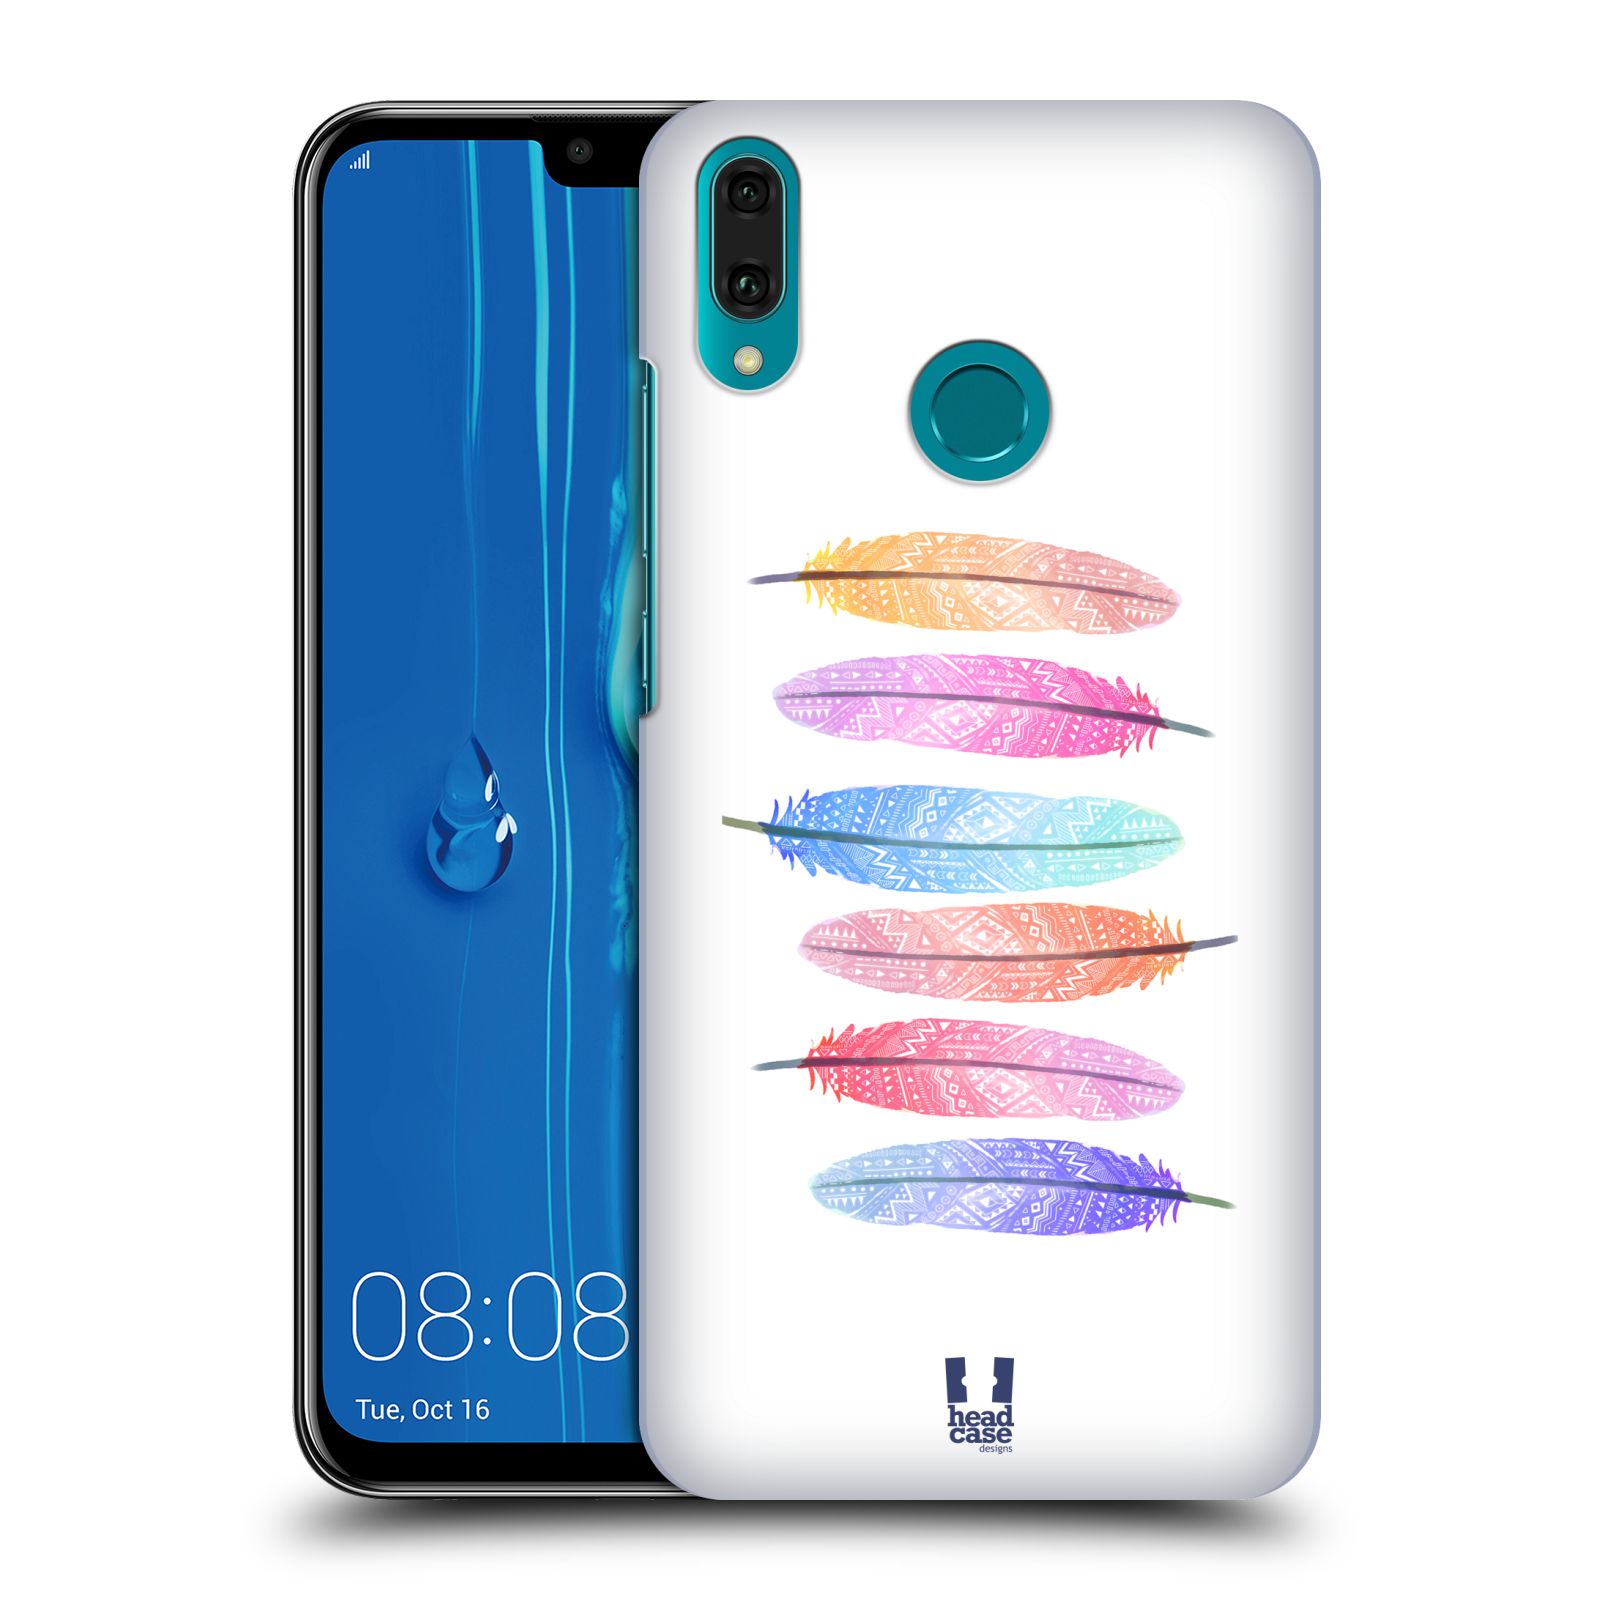 Pouzdro na mobil Huawei Y9 2019 - HEAD CASE - vzor Aztécká pírka růžová a modrá